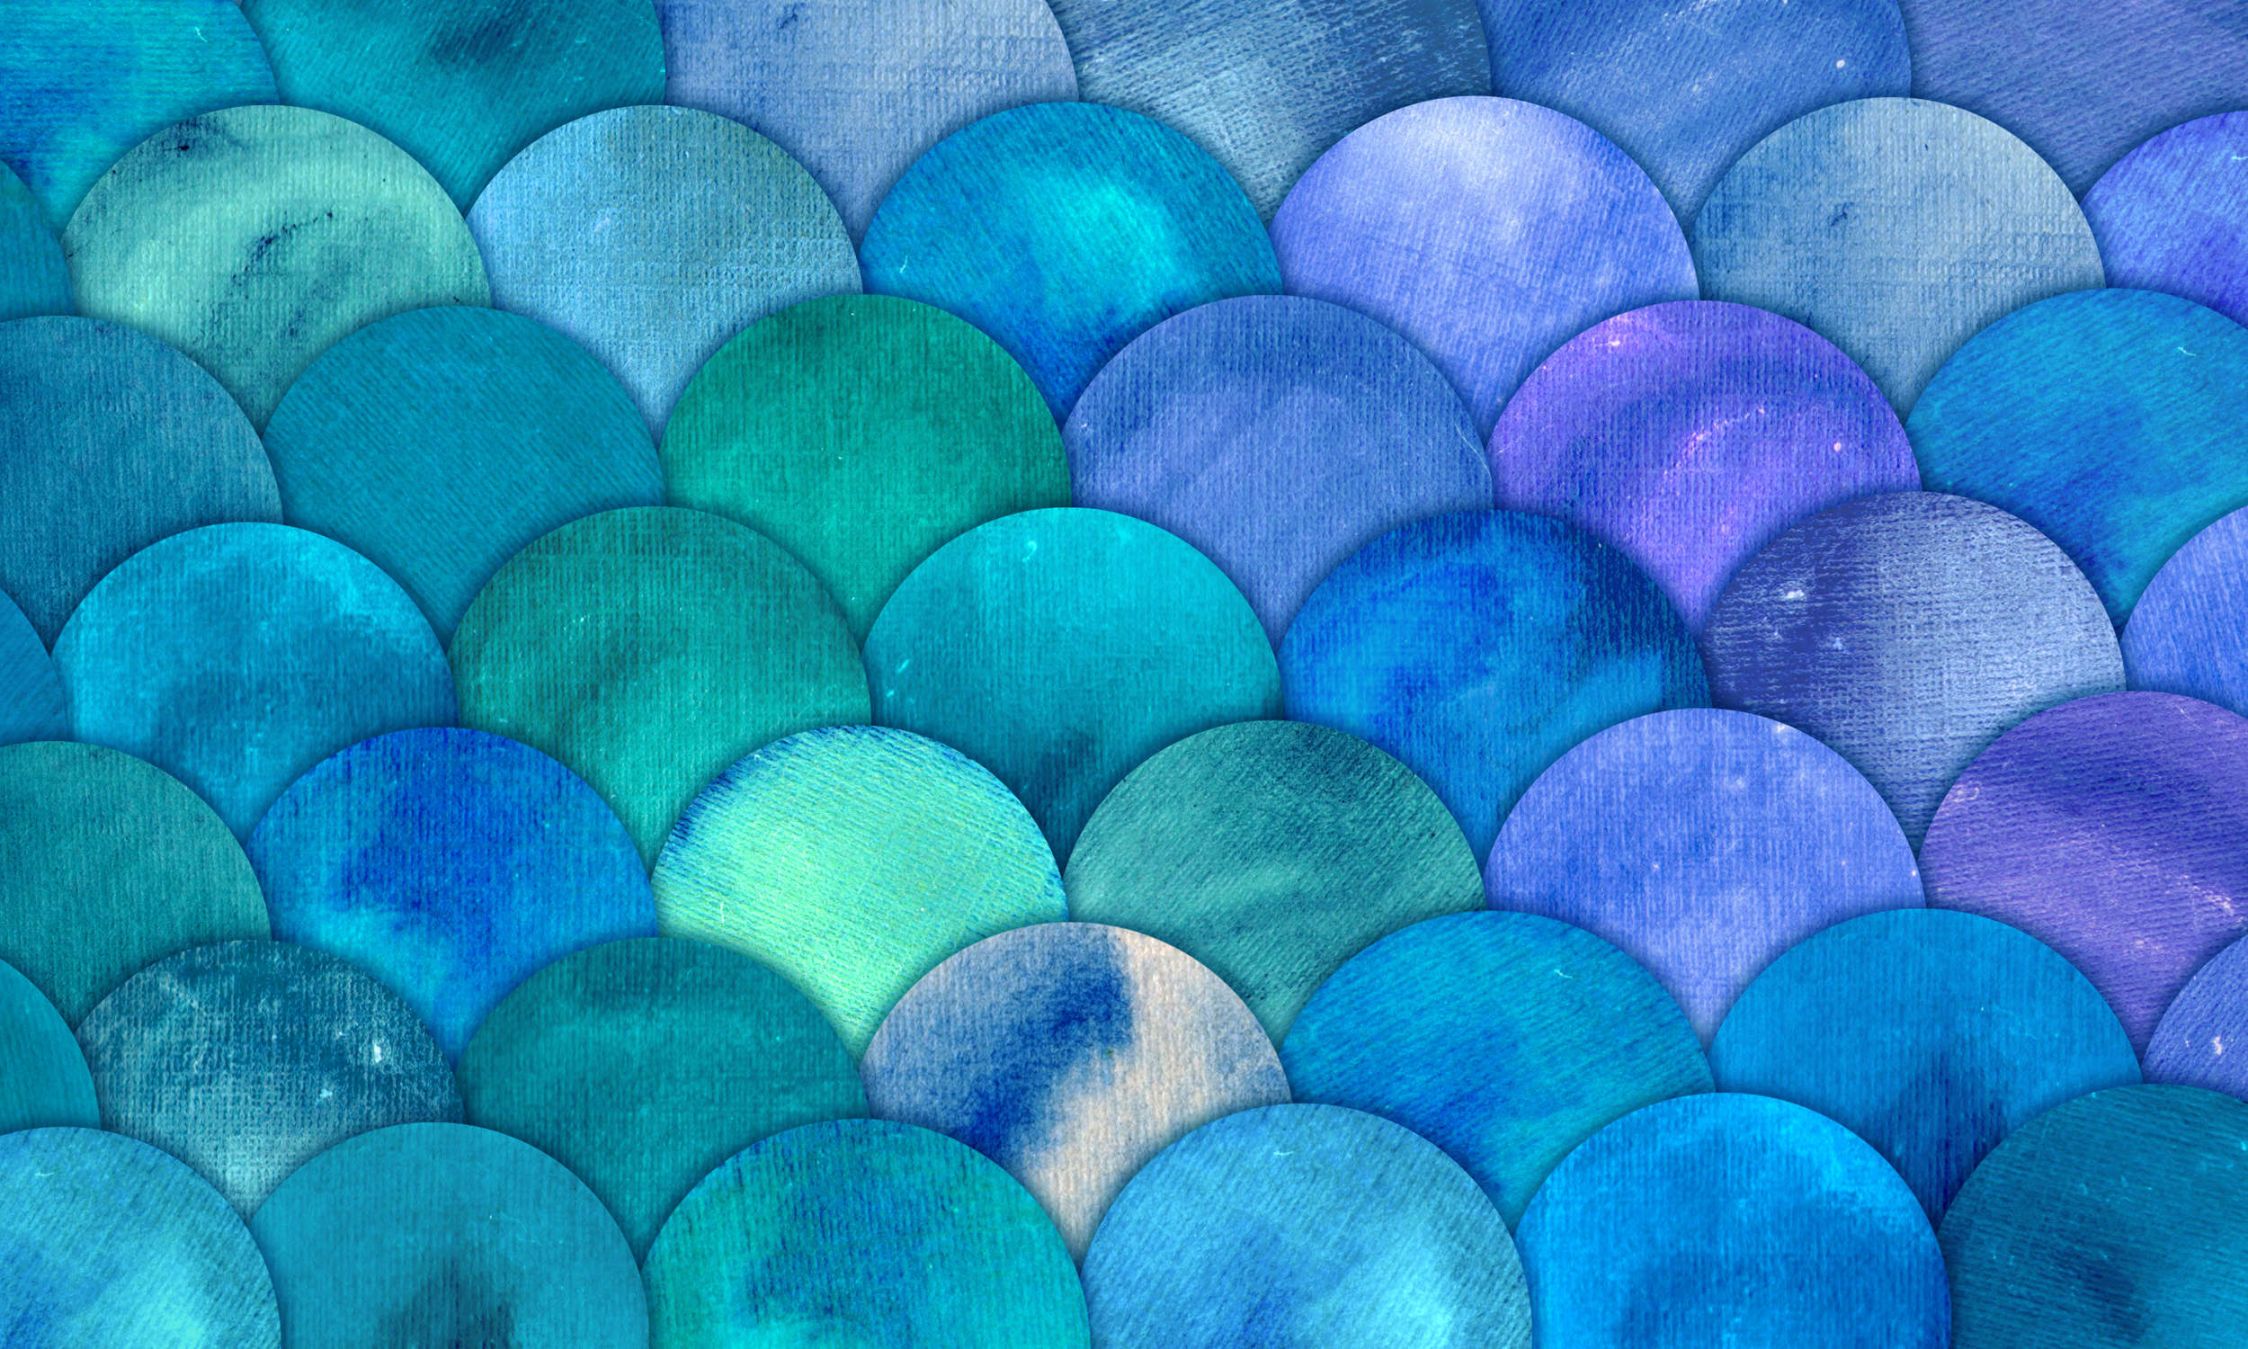             Fototapete mit Fischschuppen Muster – Glattes & leicht glänzendes Vlies
        